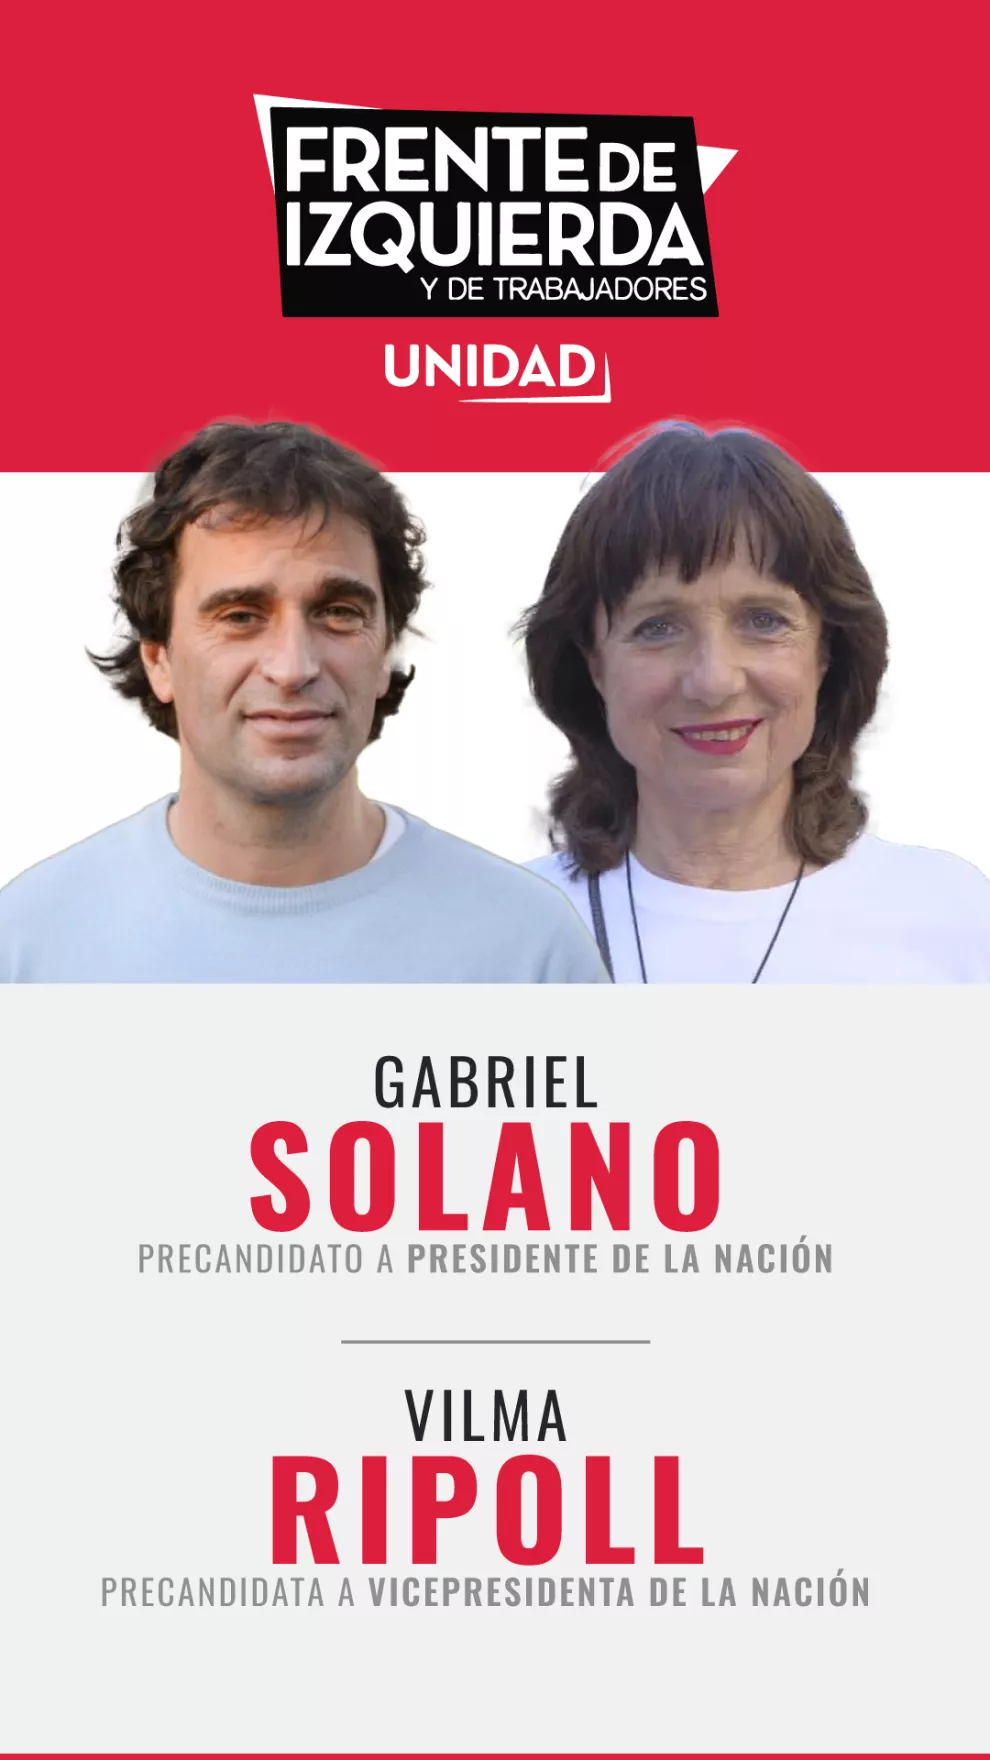 Gabriel Solano y Vilma Ripoll, por Frente de Izquierda y de trabajadores.